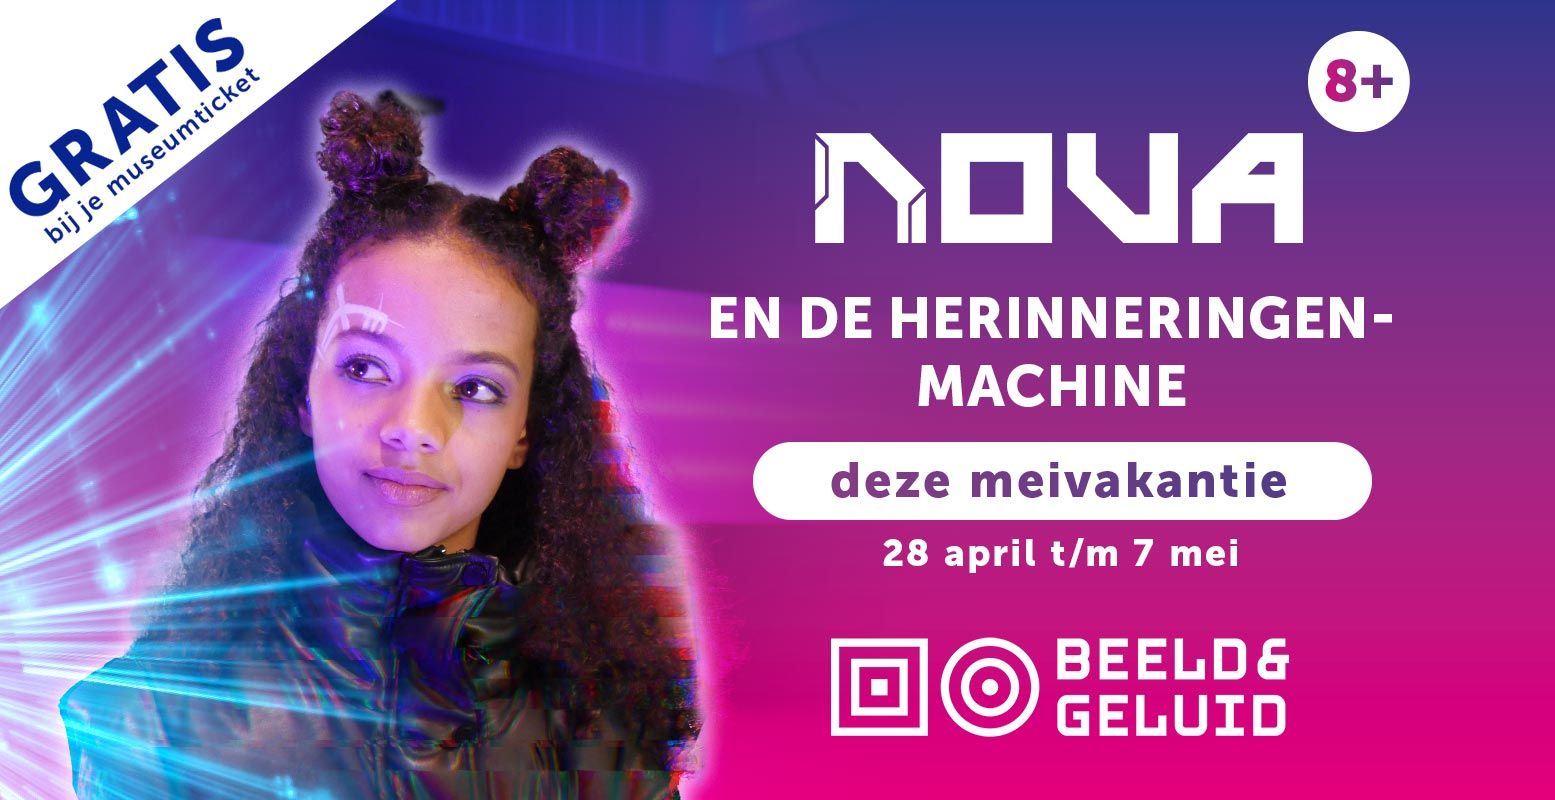 Speel in de meivakantie het spannende spel Nova & de Herinneringsmachine! Foto: Mediamuseum - Beeld & Geluid